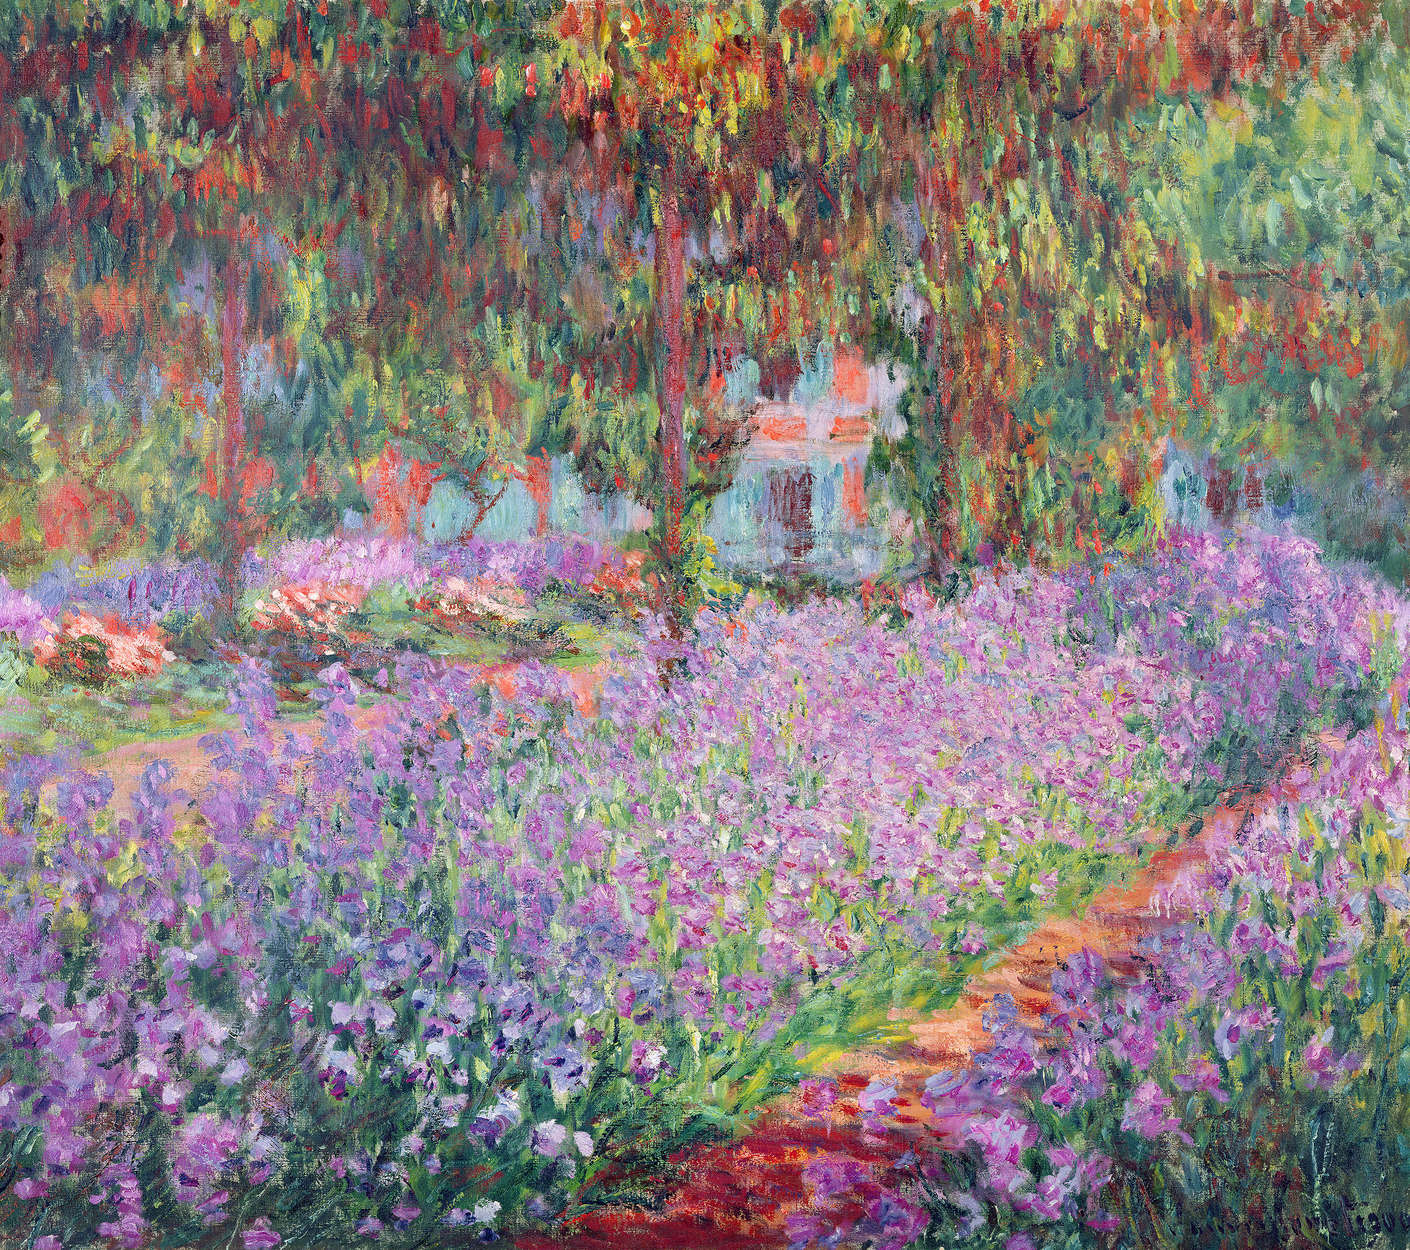             Papier peint panoramique "Le jardin de l'artiste à Giverny" de Claude Monet
        